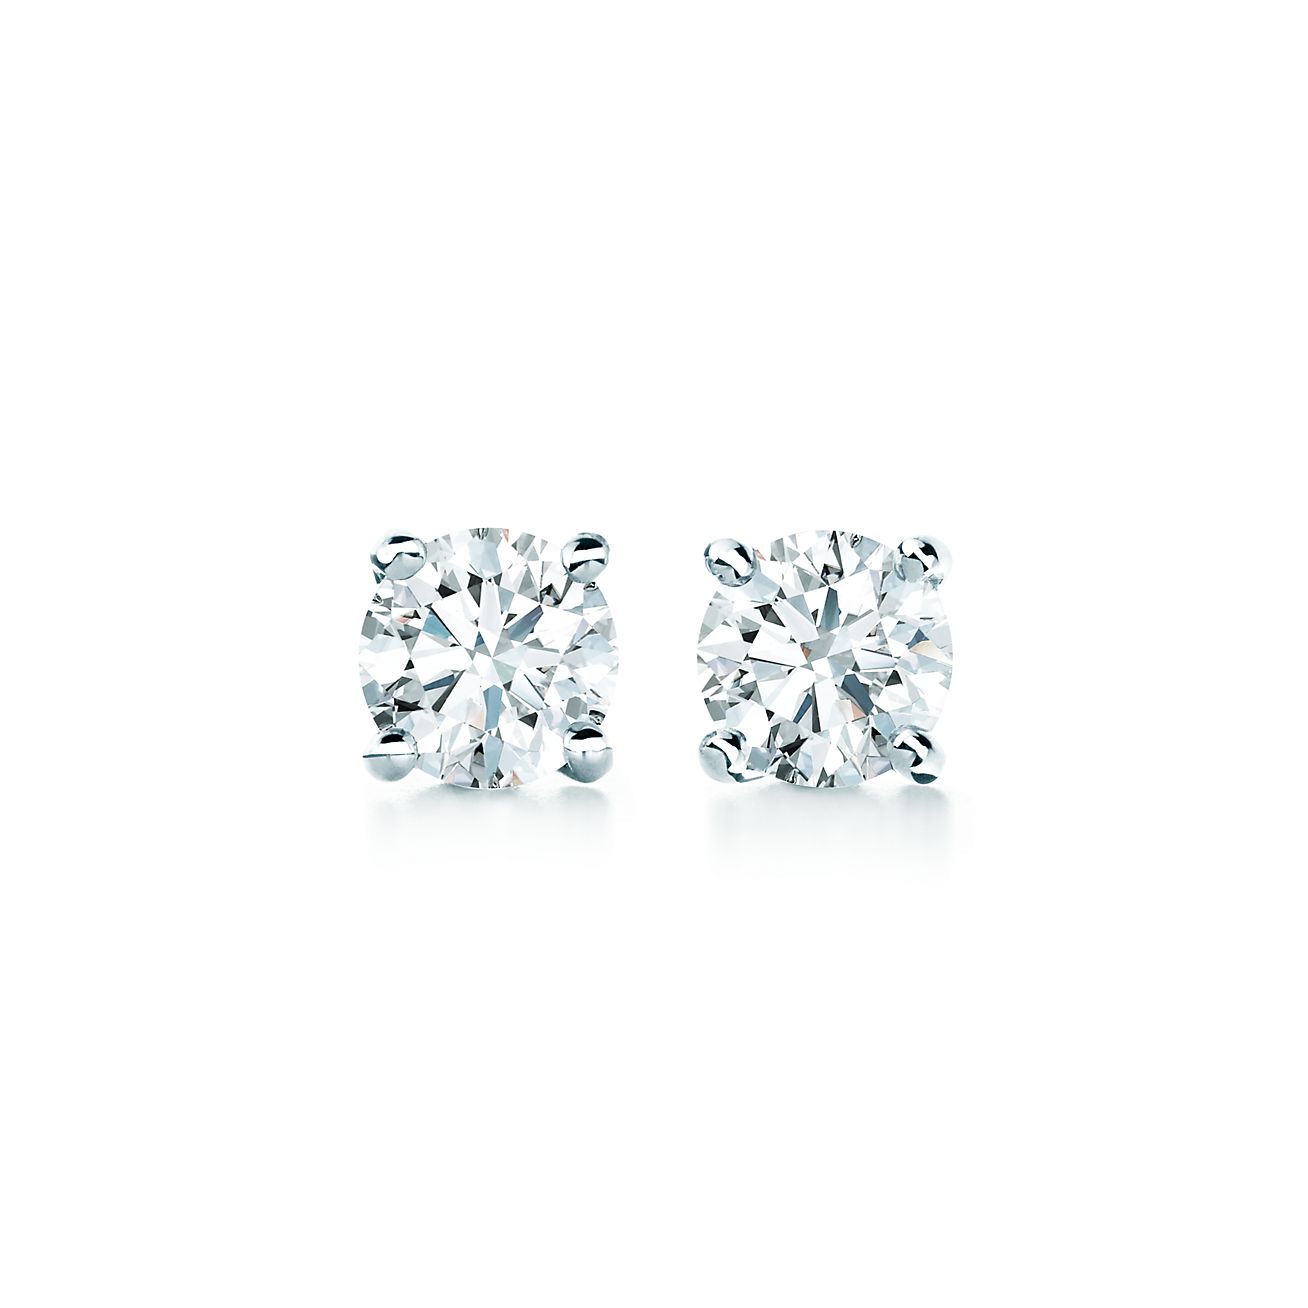 Tiffany & Co. Diamond 2.00 ctw - 4.99 ctw Total Carat Weight Earring Fine  Earrings for sale | eBay